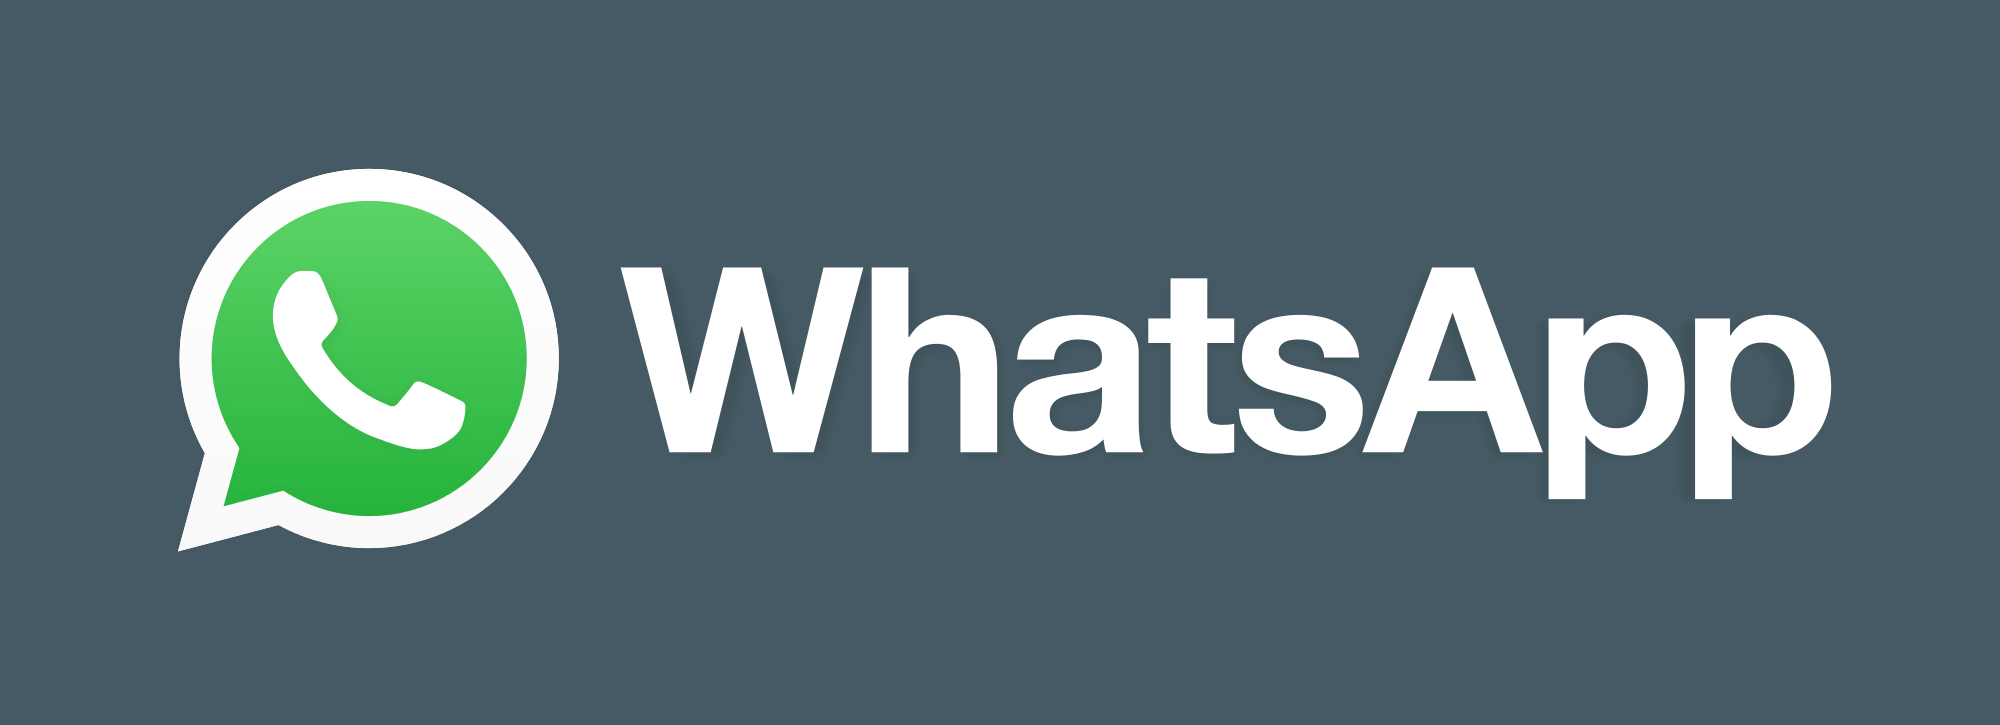 Las mejores novedades de WhatsApp en 2017